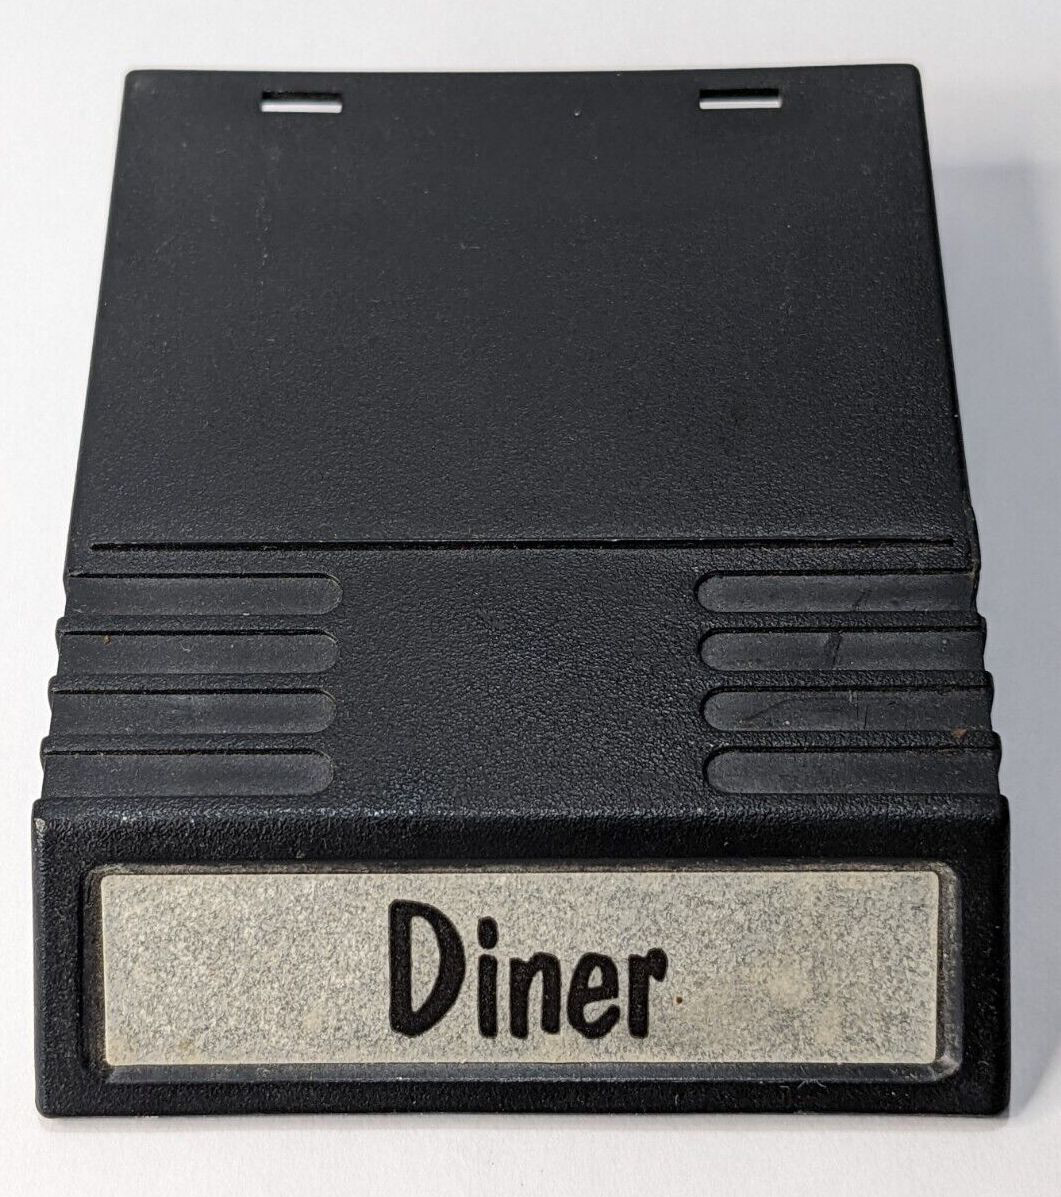 Diner - Intellivision